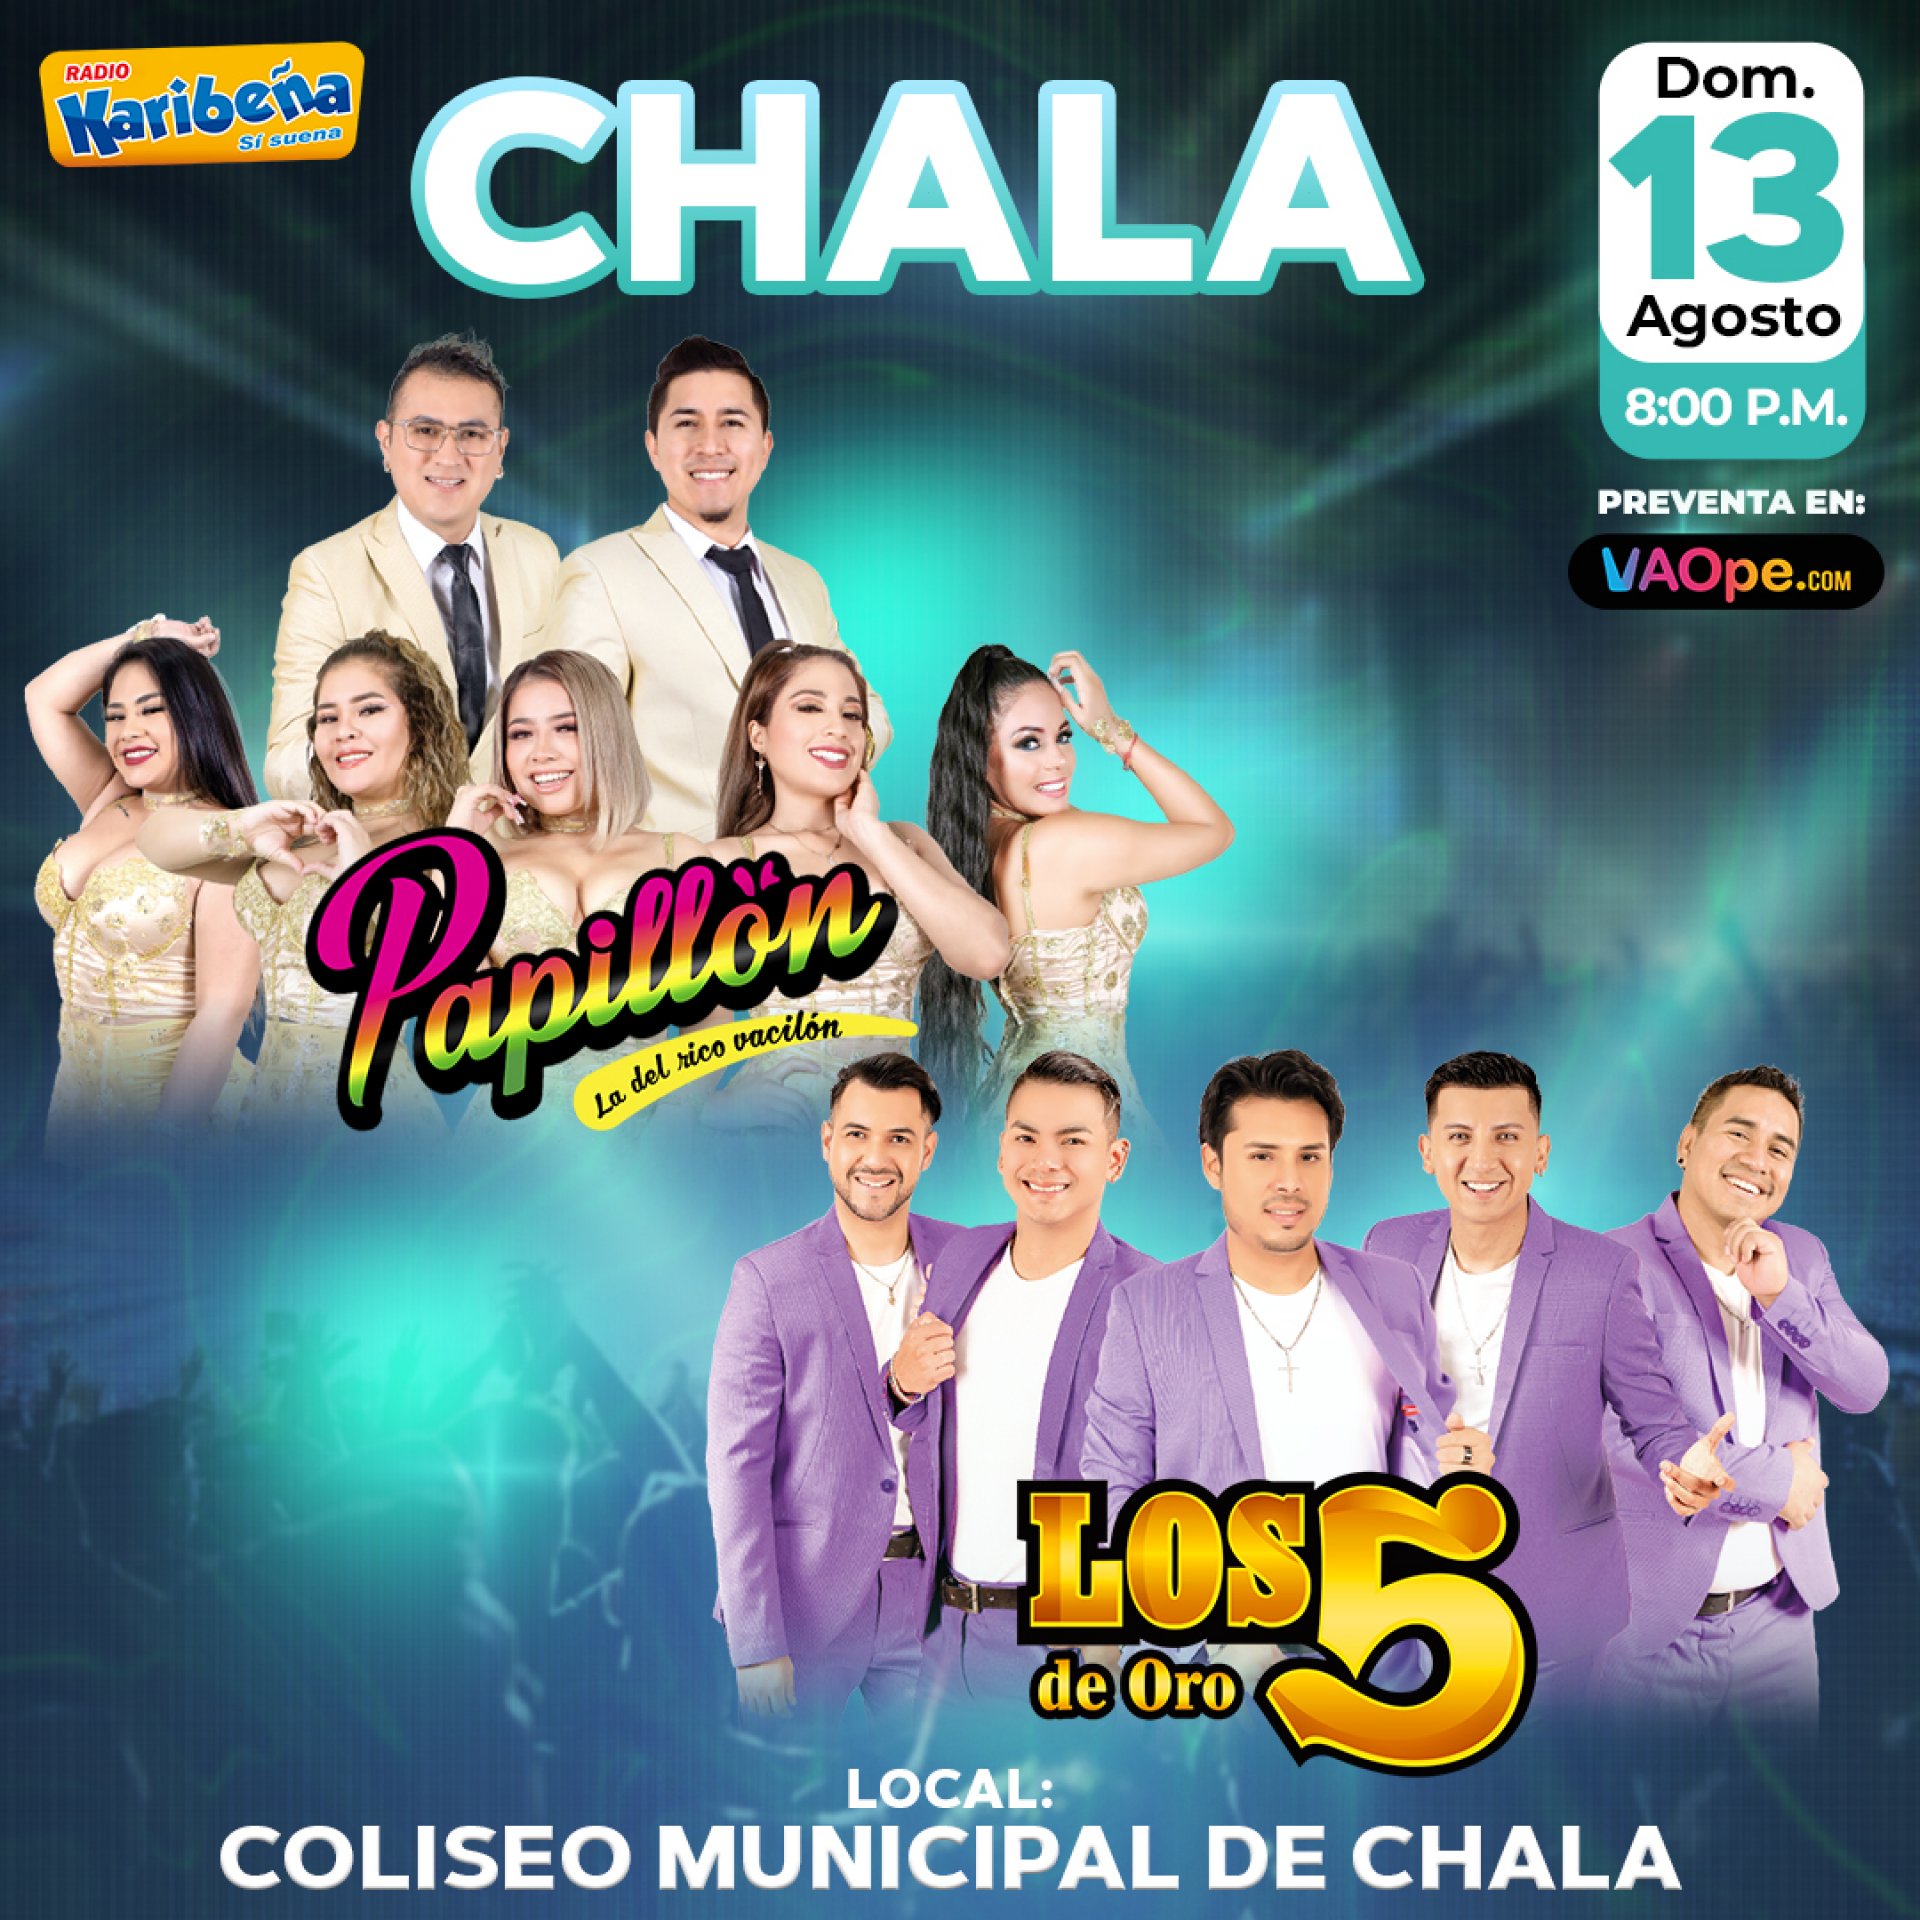 La mejor cumbia llega a Chala! Papilln y Los 5 de Oro te harn gozar este 13 de agosto